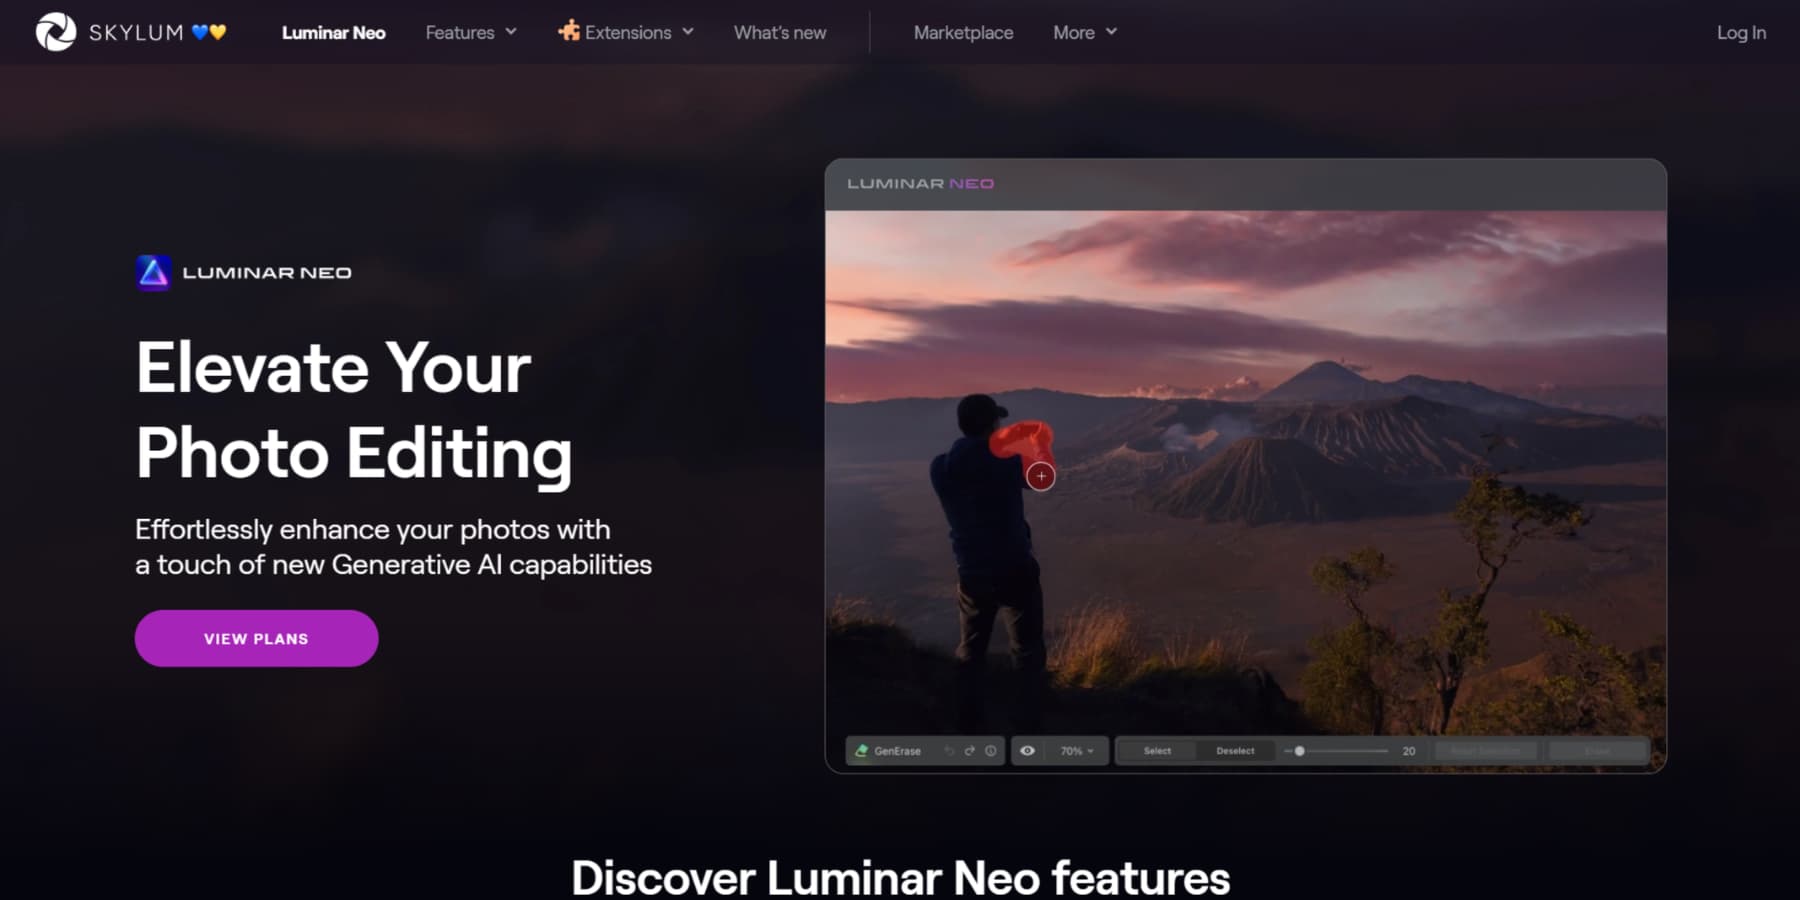 A screenshot of Skylum Luminar Neo's homepage